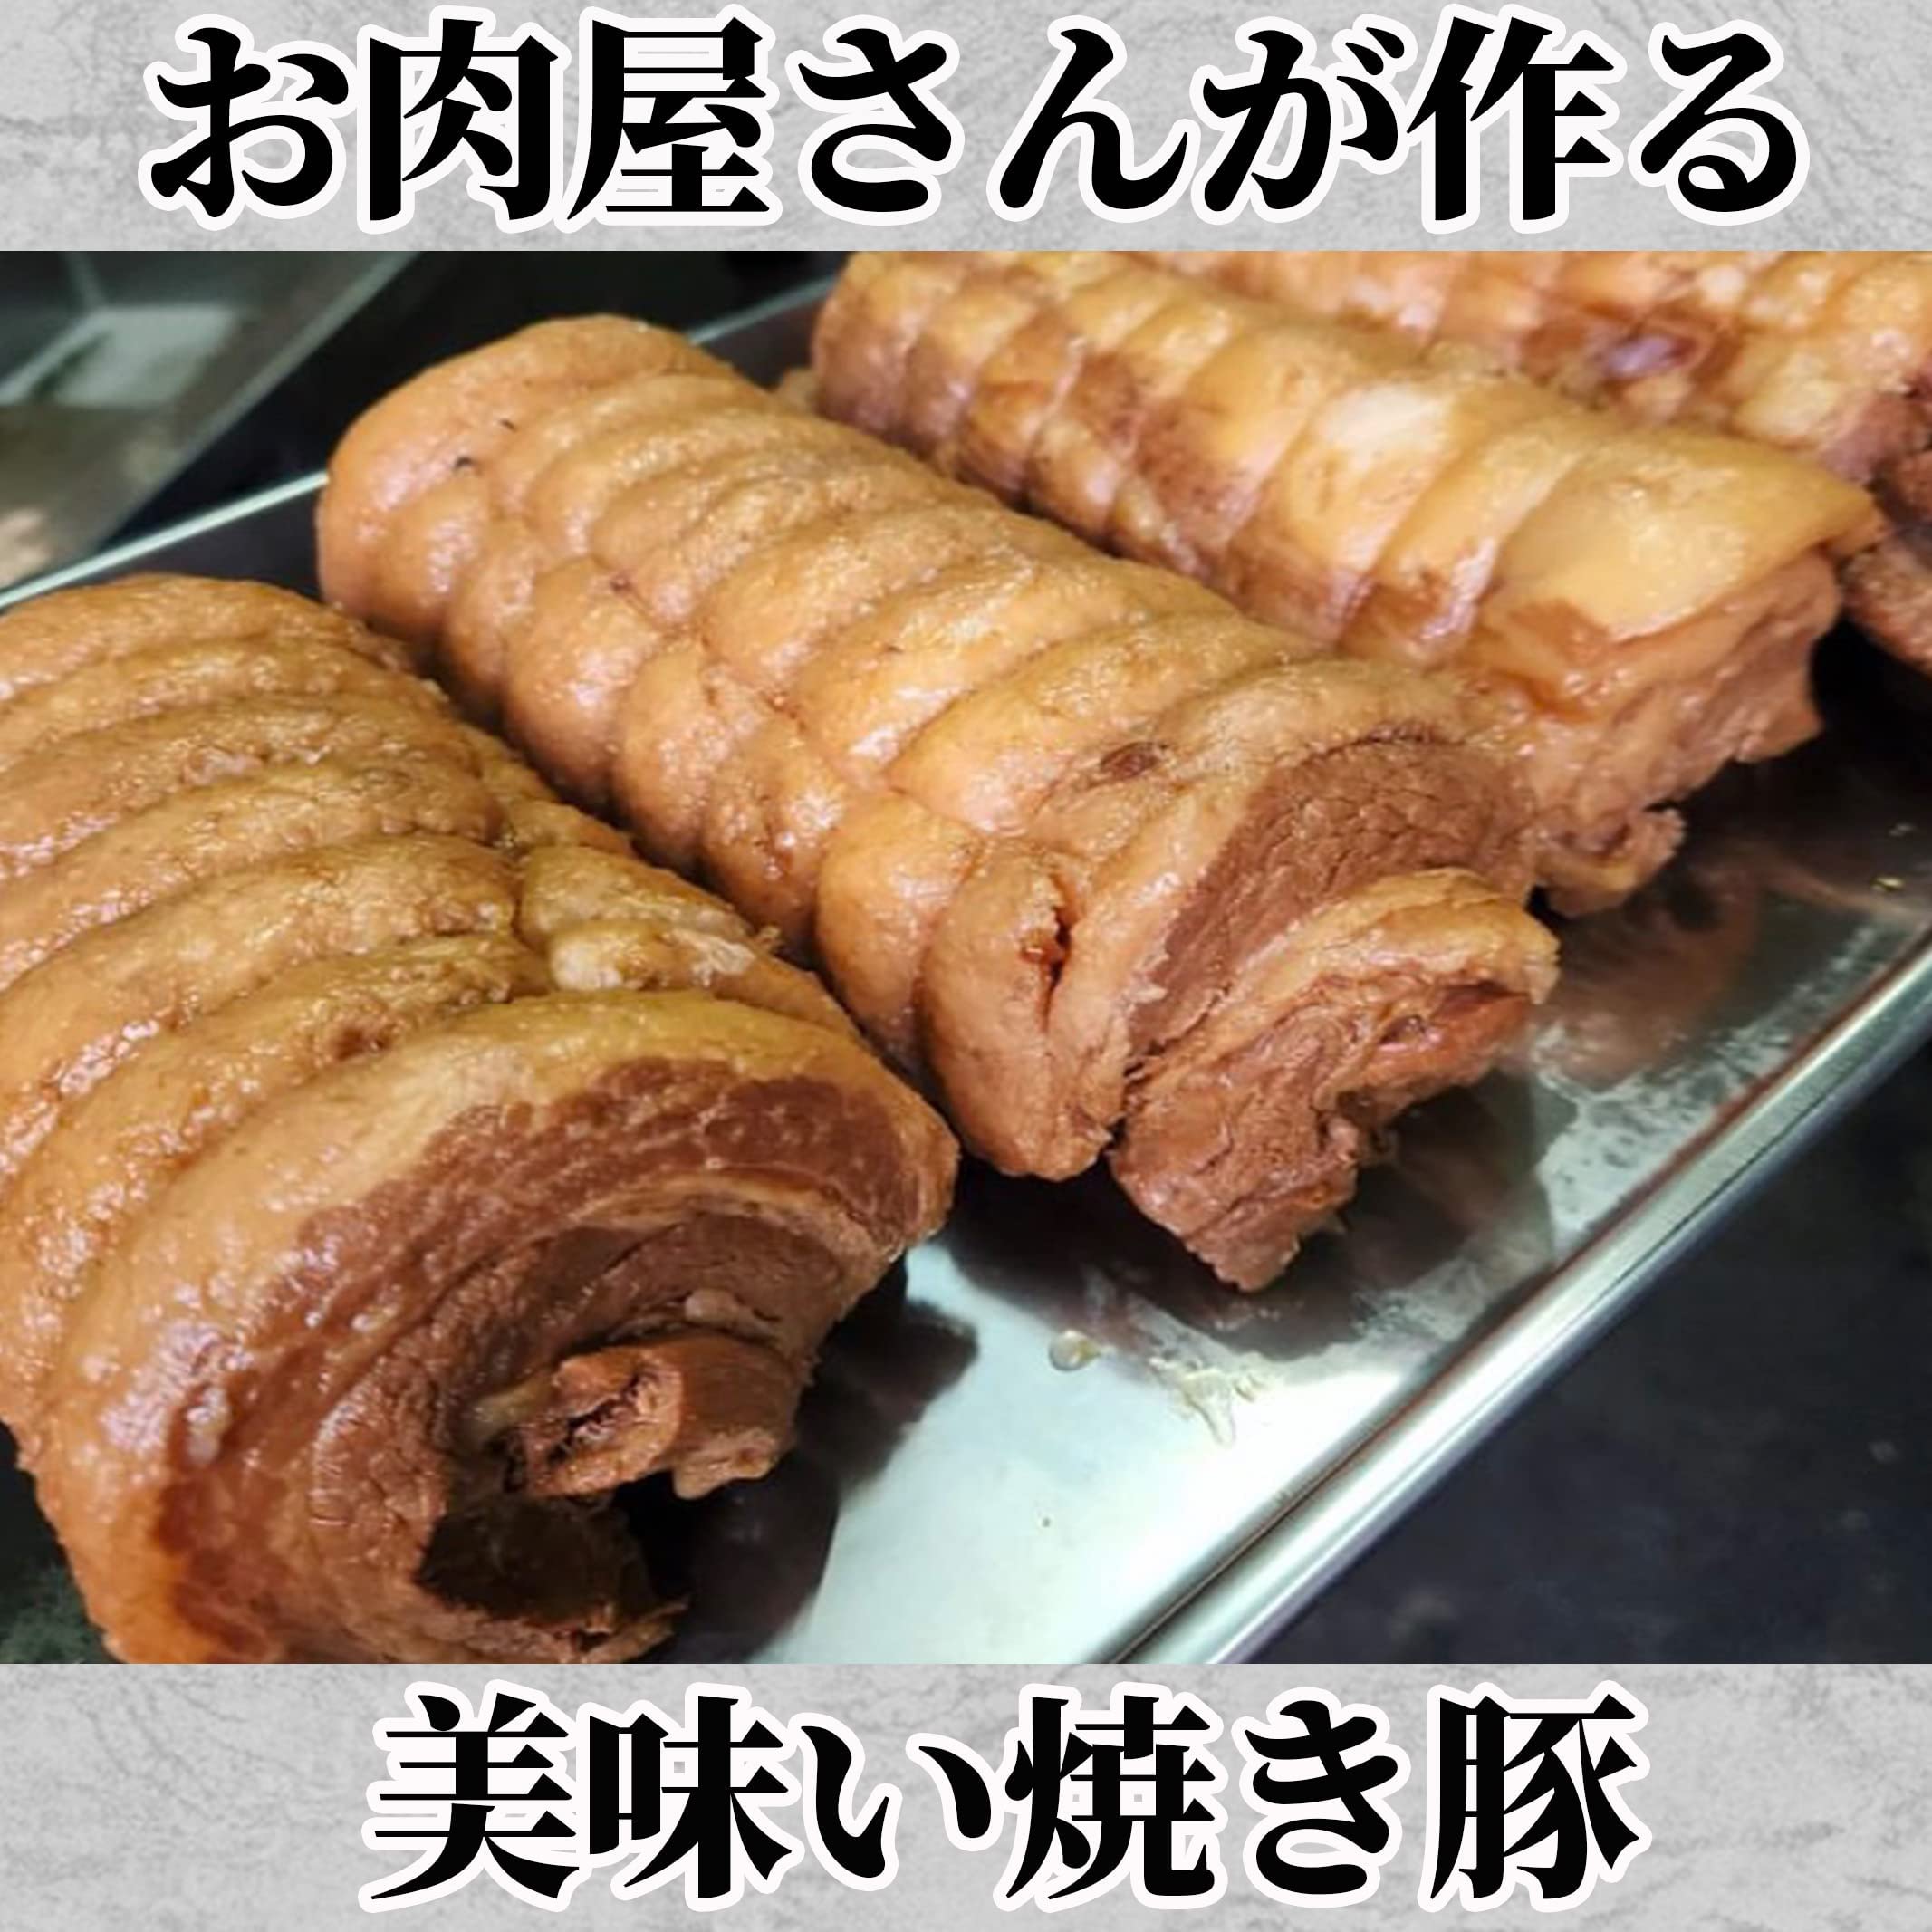 . свинья есть перевод блок 1.2-1.3kg коричневый - колодка собственный производства tare свинья роза мясо свинина жарение свинья ..